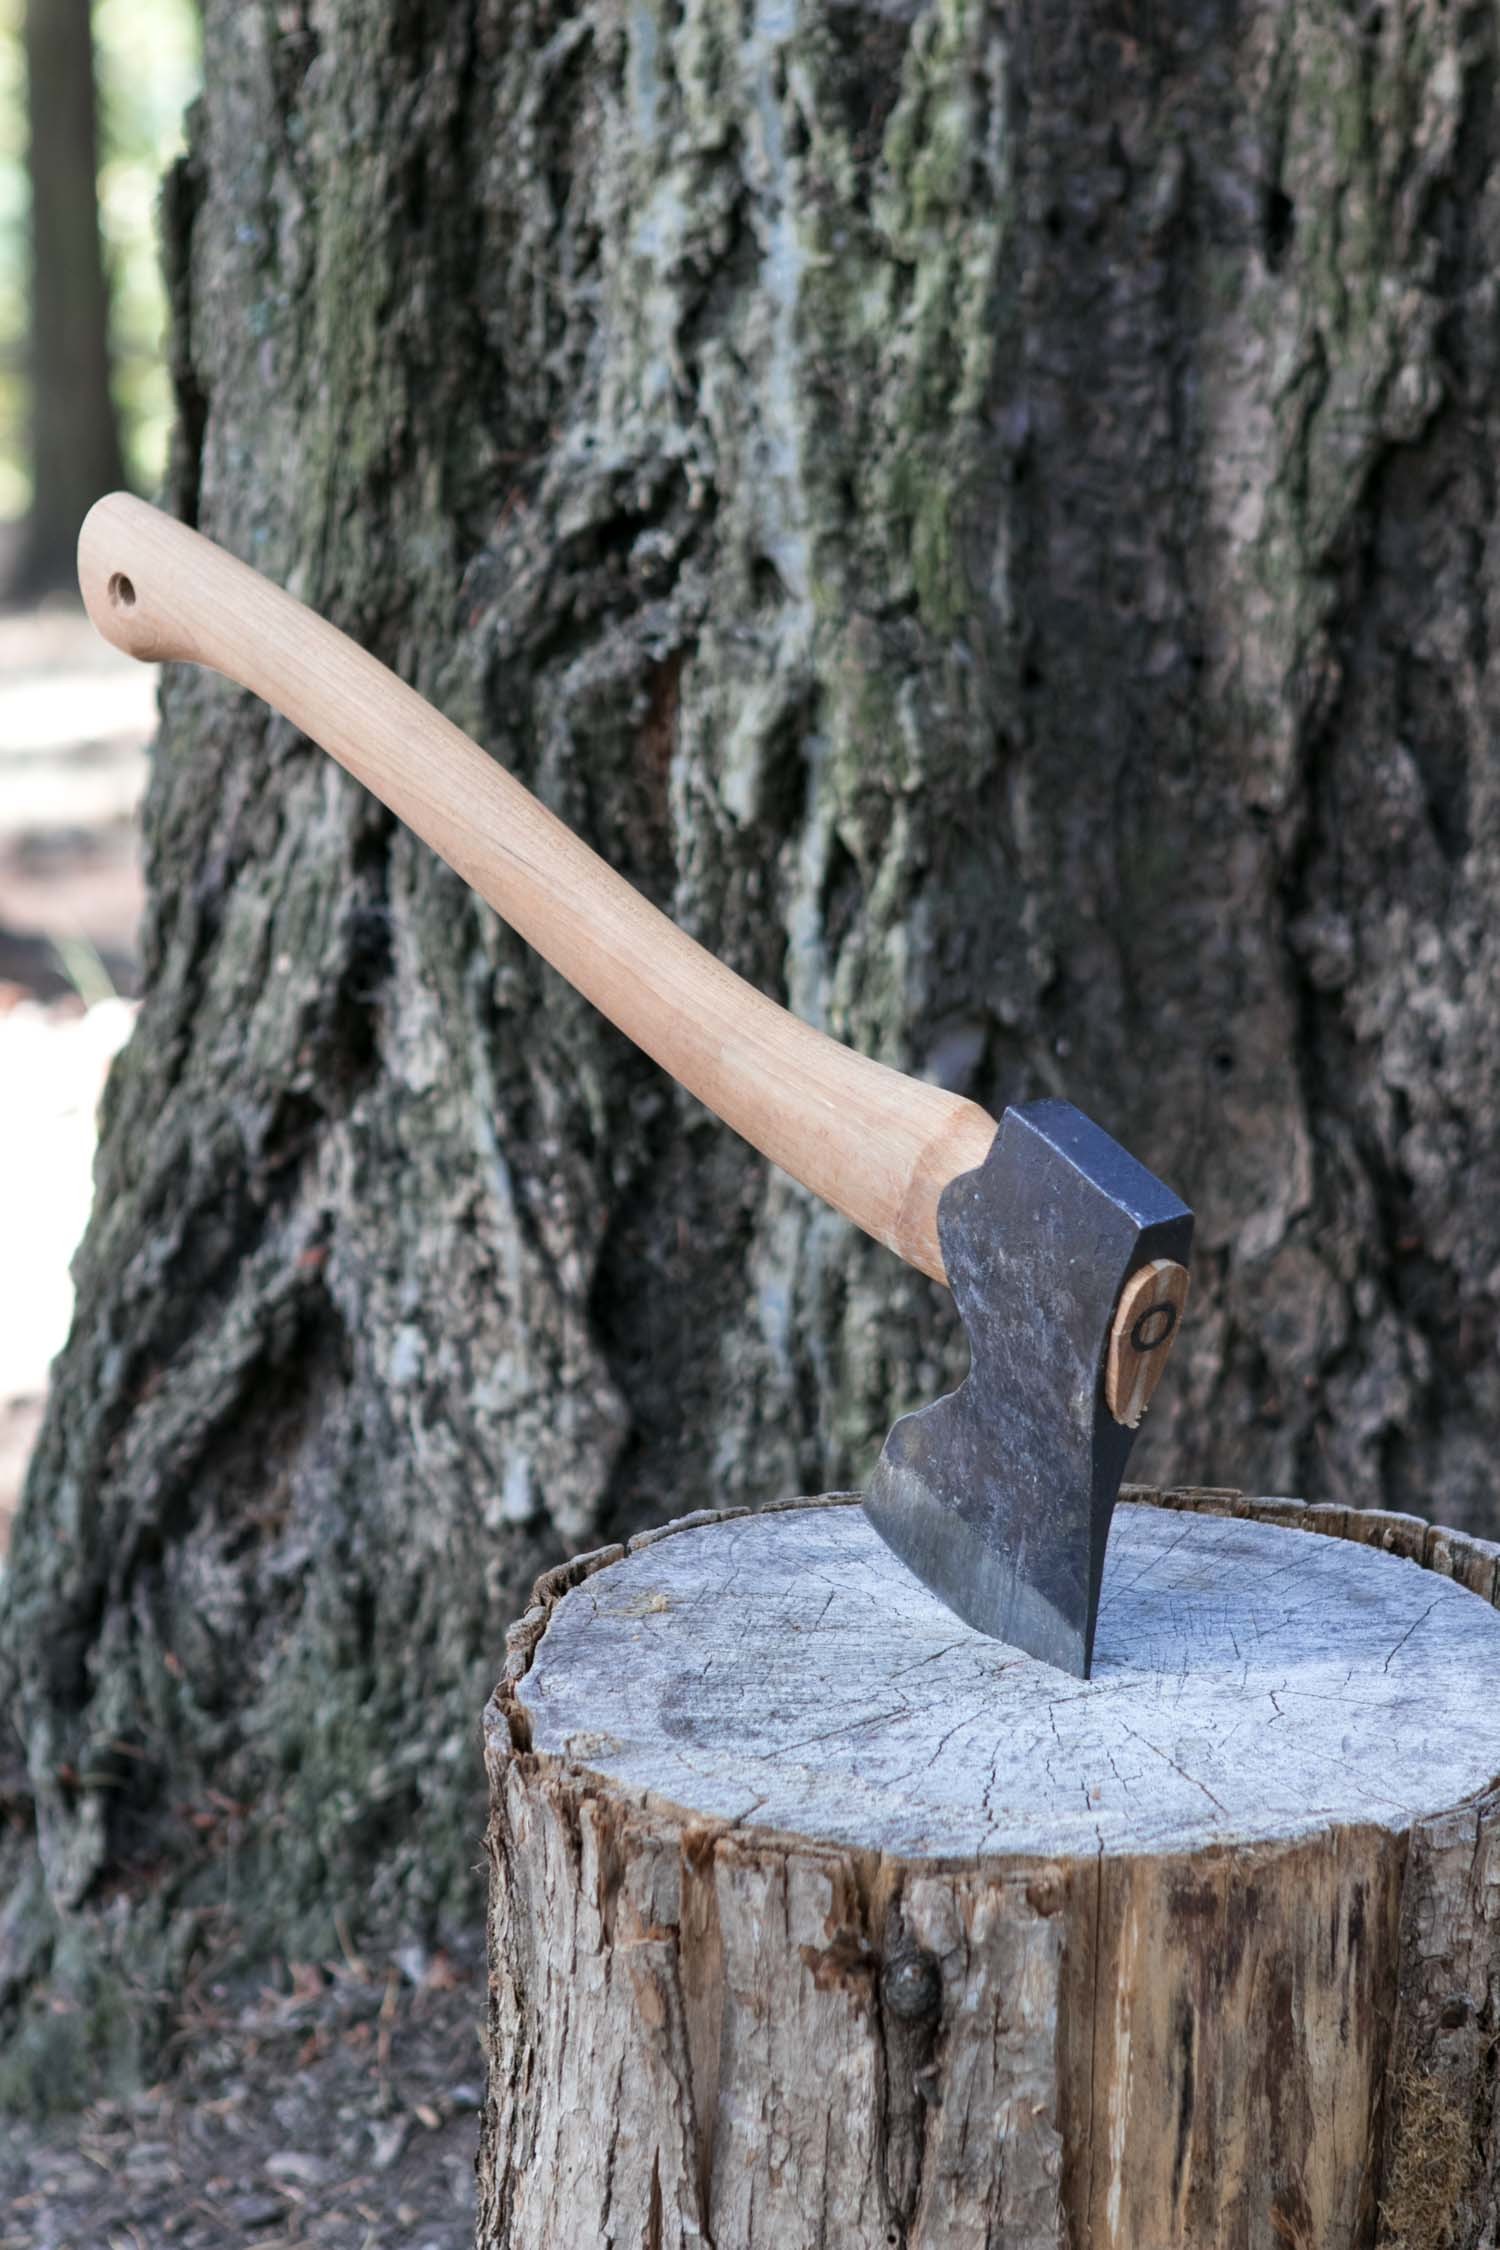 how to sharpen an axe